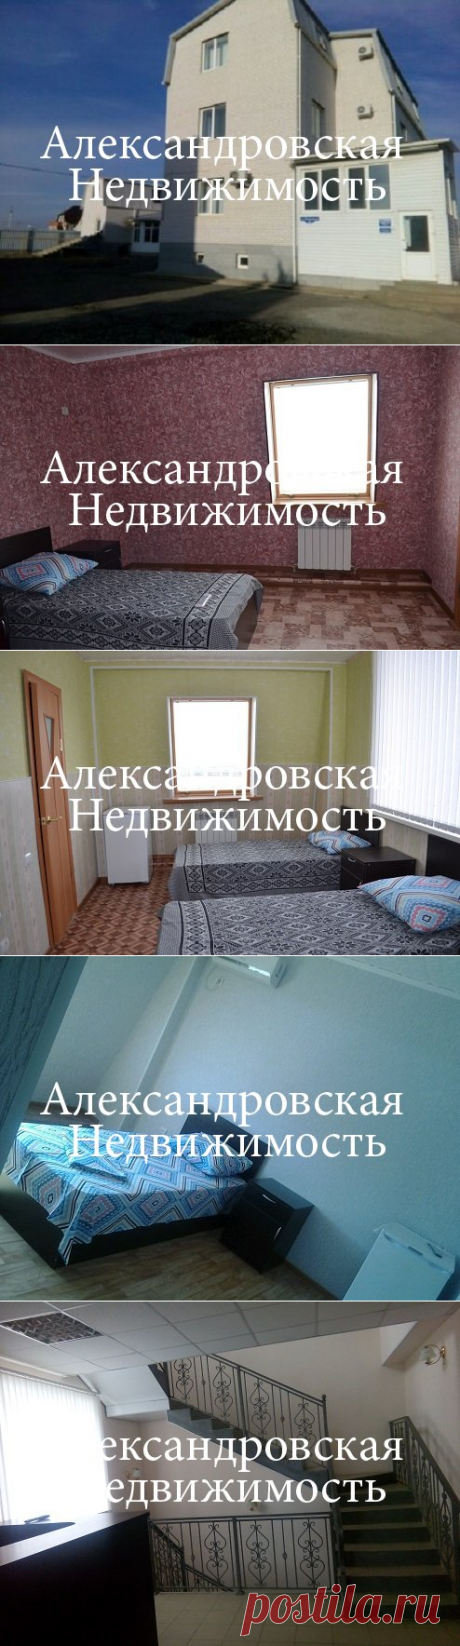 Продается отель &quot;ГОСТъ&quot; действующий с сауной в Астрахани ул.Каверина 6. &amp;raquo; Недвижимость г.Астрахань